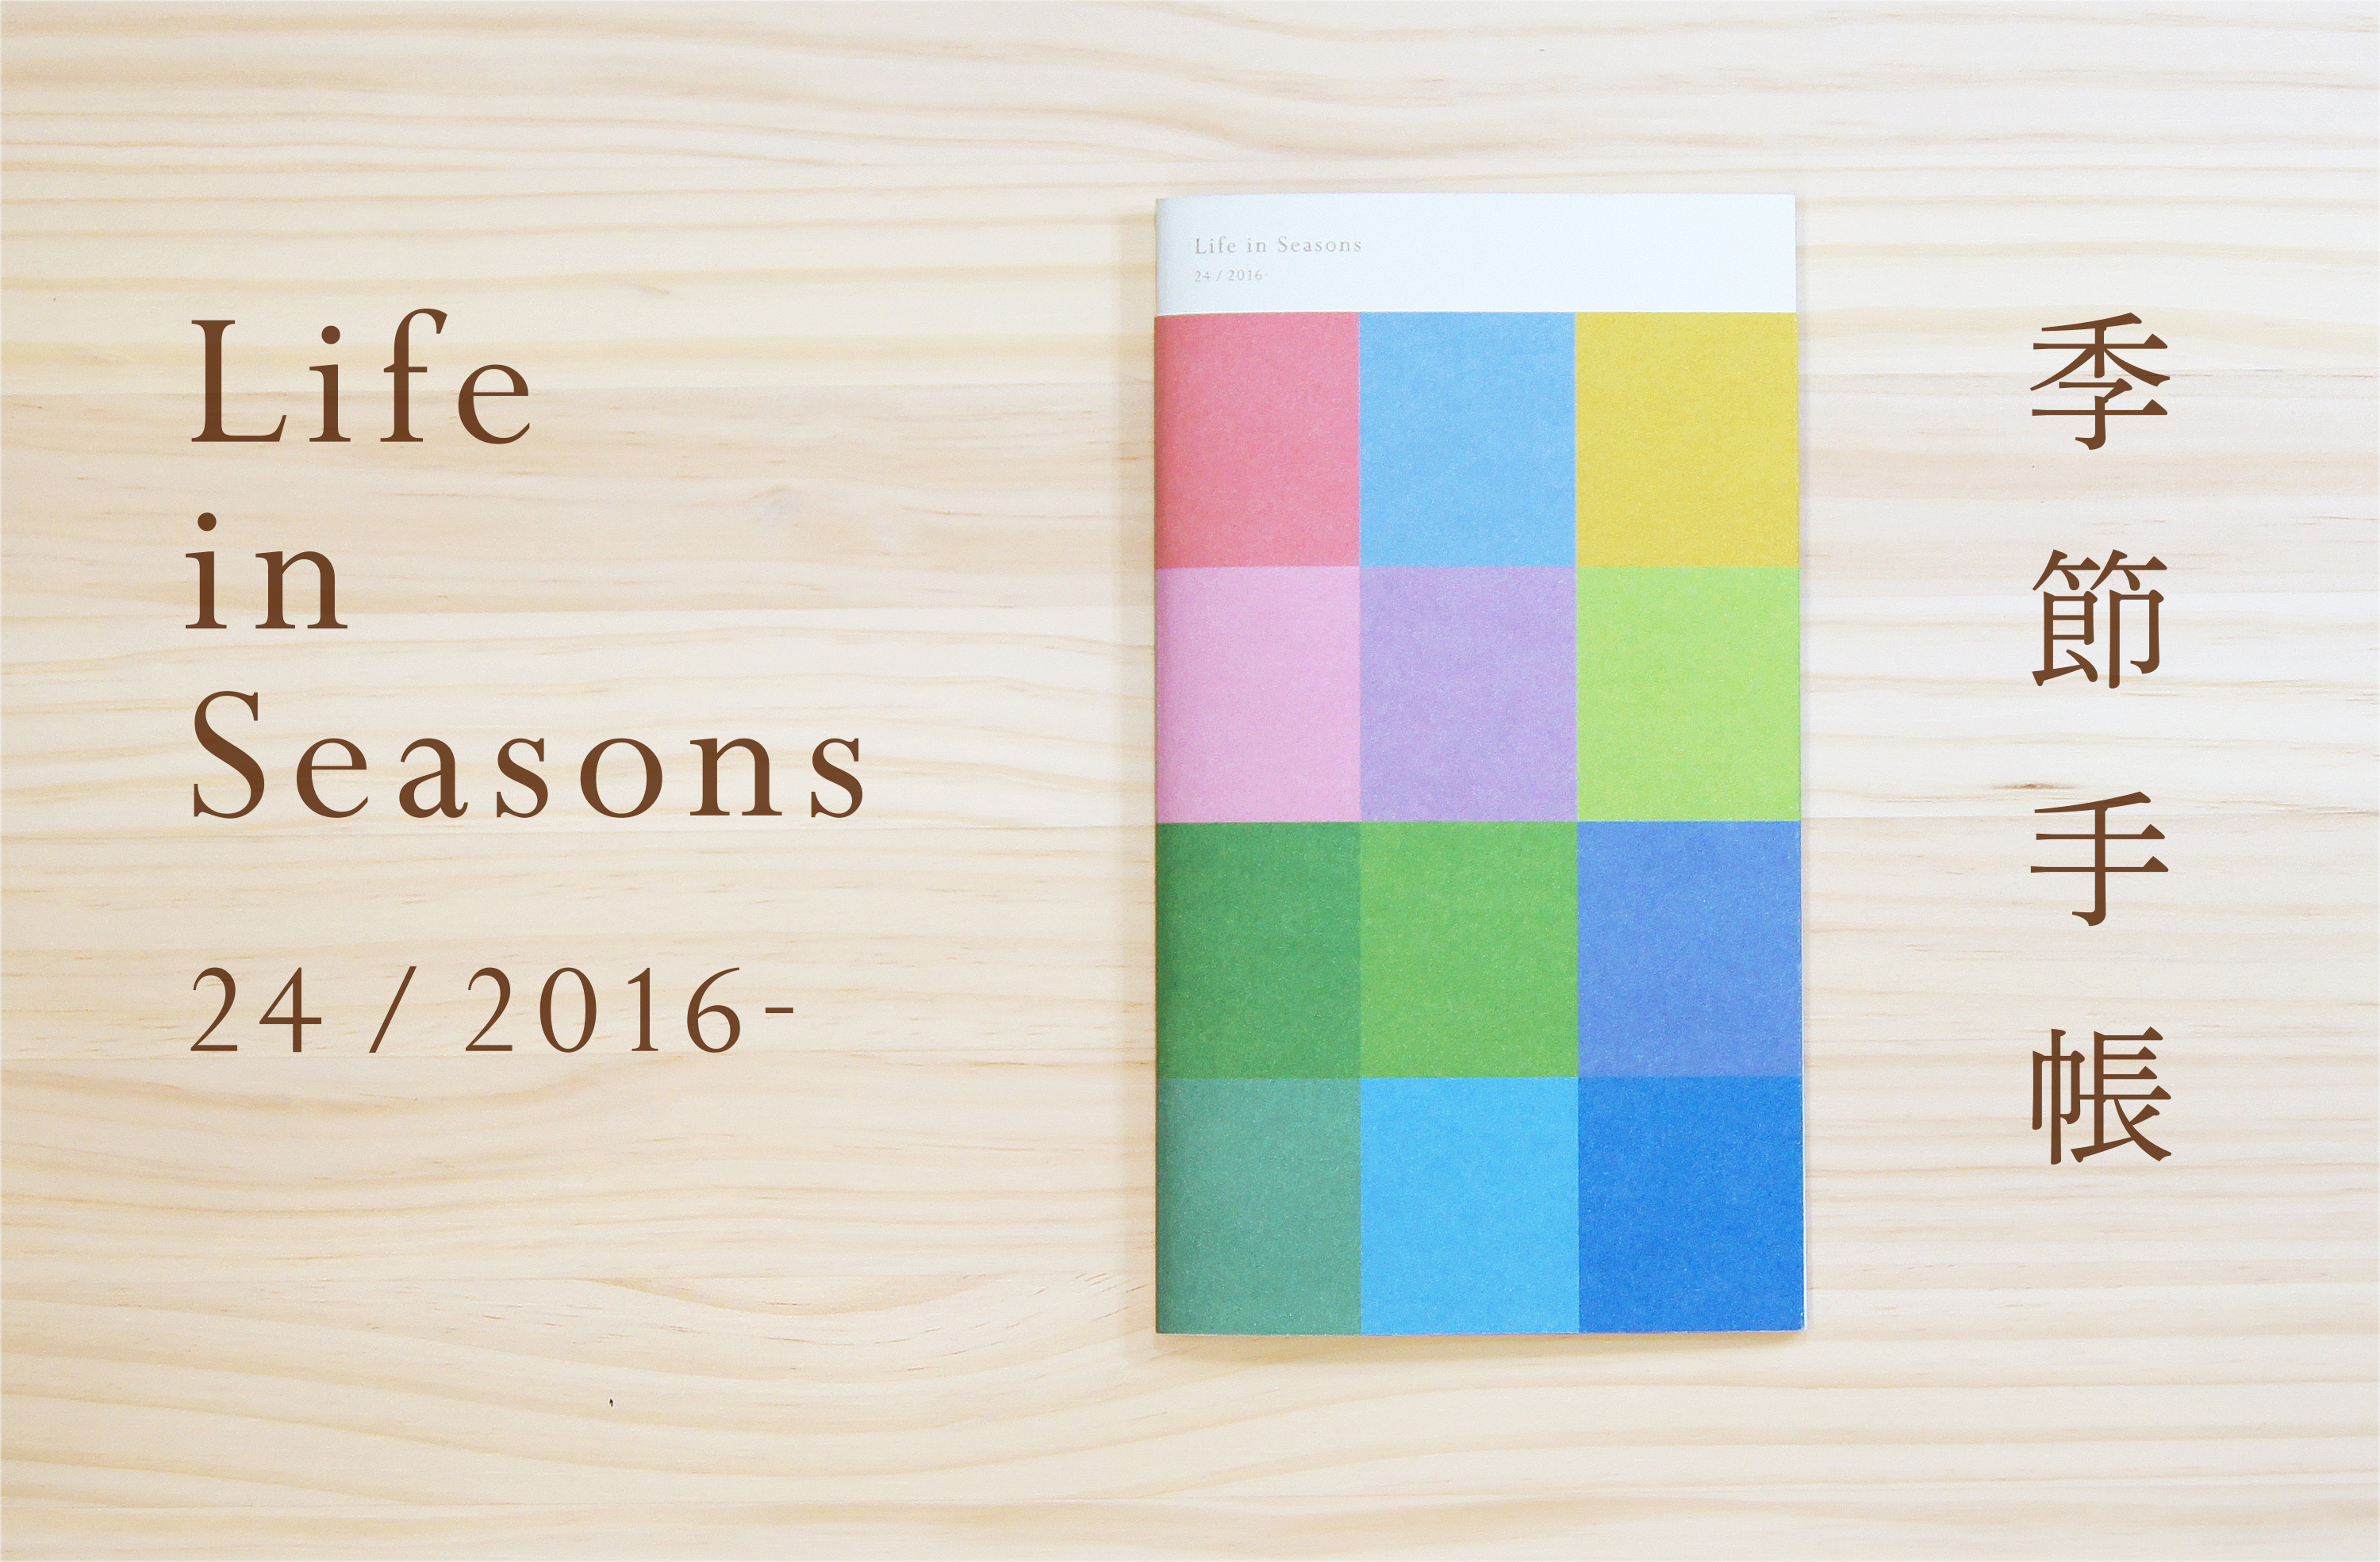 16年は24の季節を楽しもう 二十四節気 区切りの手帳 Life In Seasons 季節手帳16 新発売 株式会社ハレノヒコンセプトのプレスリリース